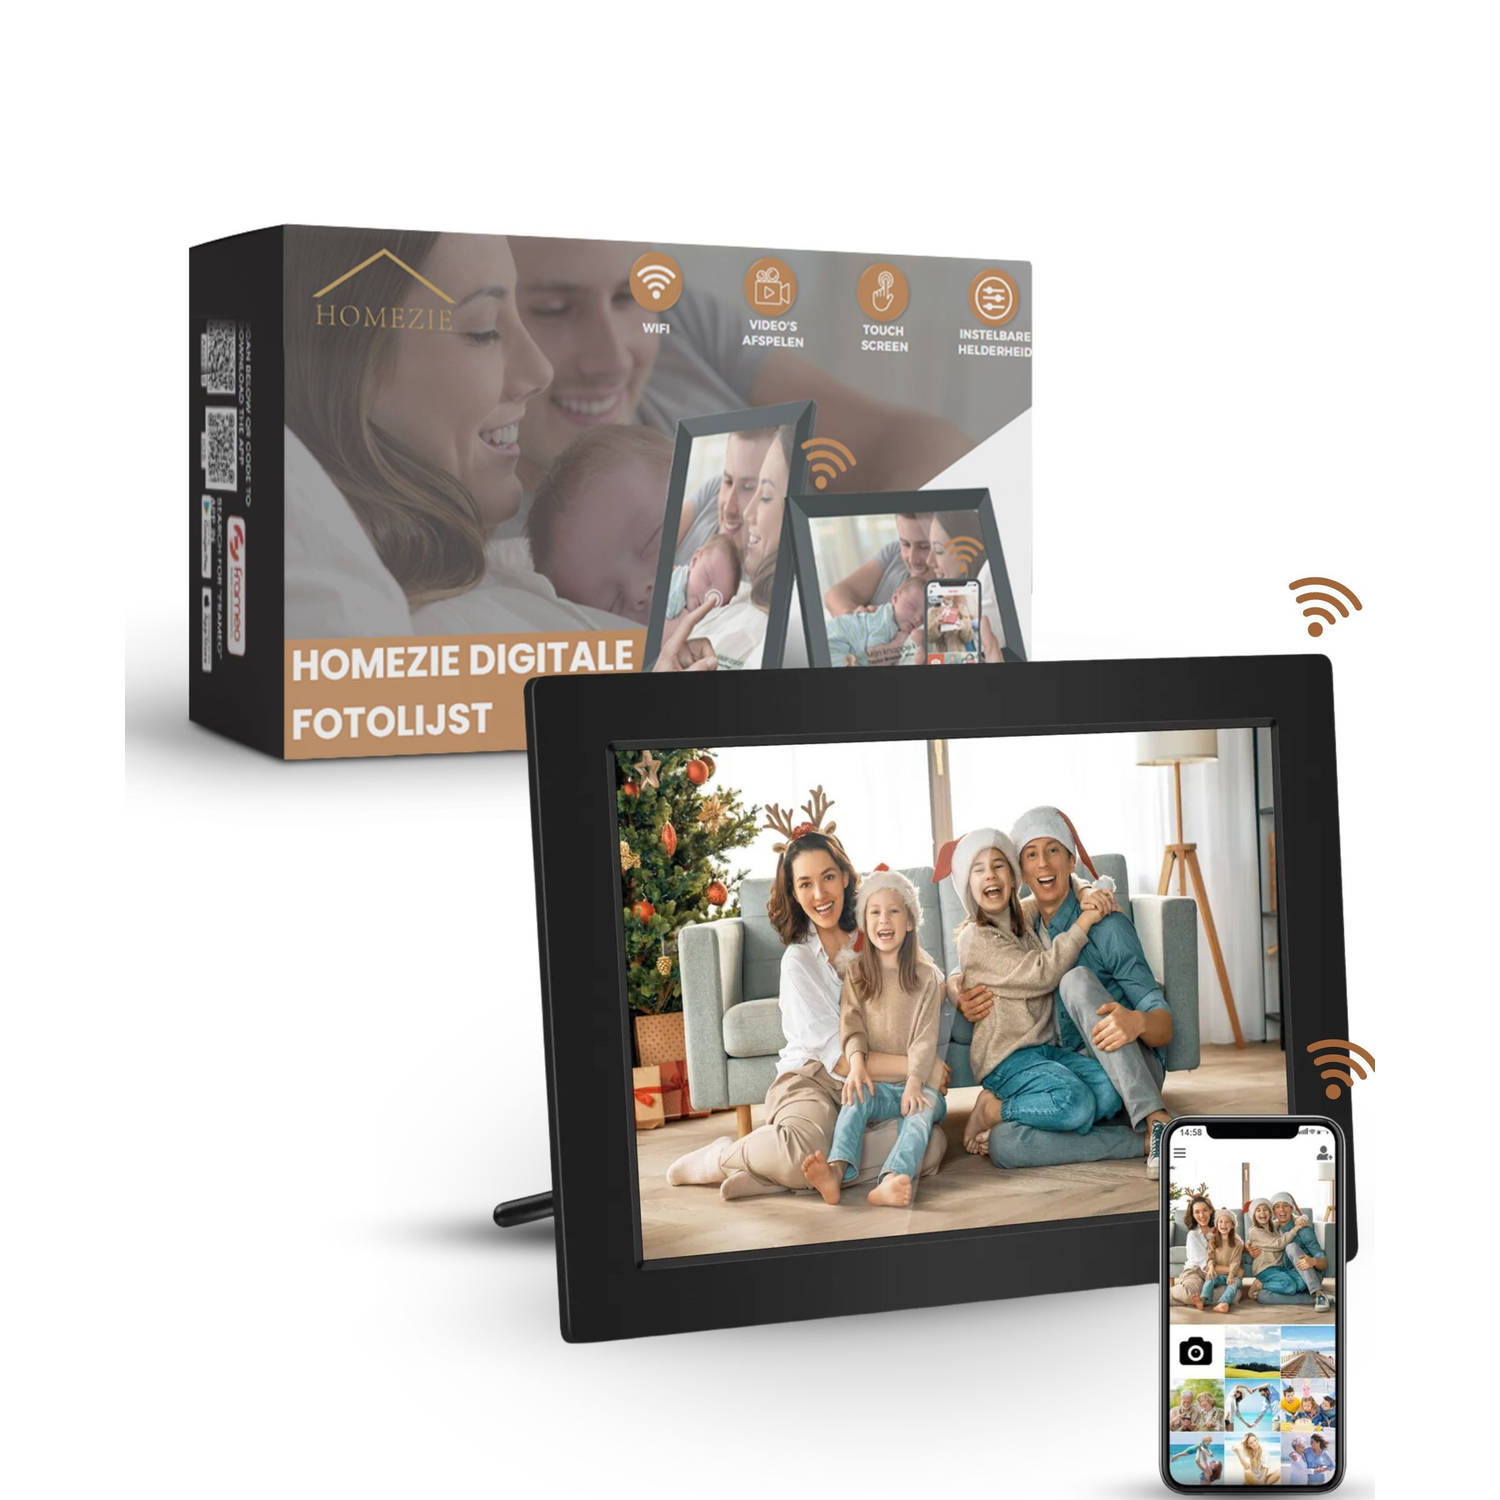 Homezie Digitale fotolijst Frameo app 1280*800 scherm 10 inch Touchscreen scherm Digitale fotolijst 